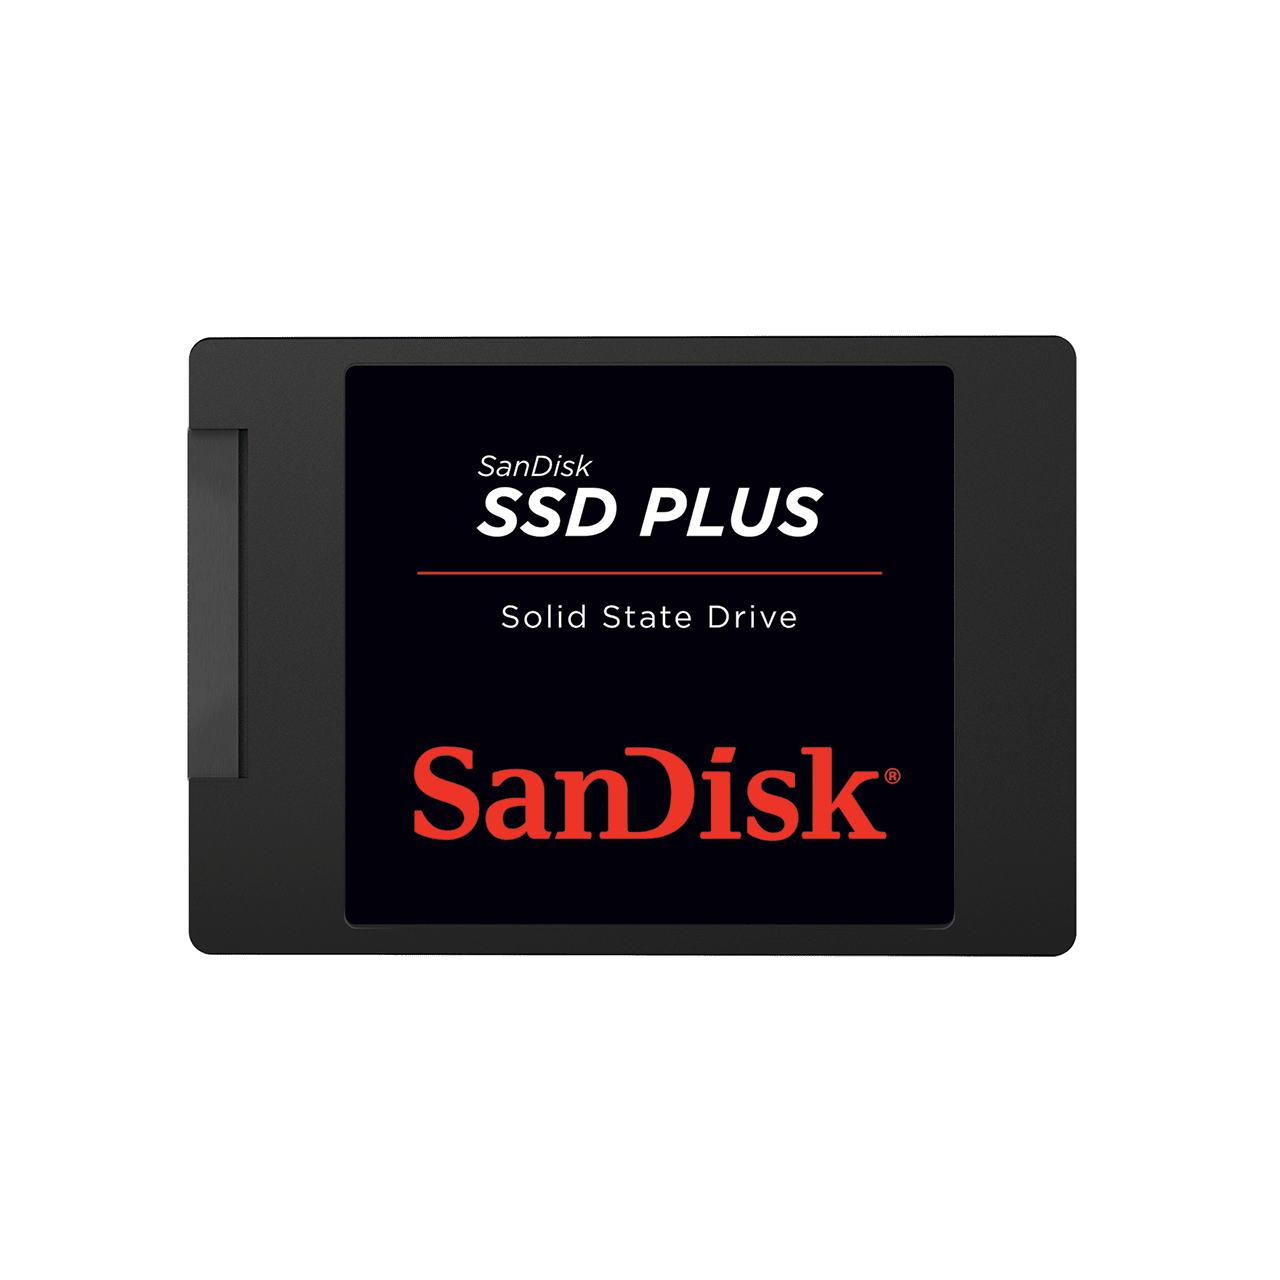 Buytec Online Shop Shop sandisk ssd plus sata in Kenya, shop Shop sandisk ssd plus sata in Kenya , buy Shop sandisk ssd plus sata in Kenya, SanDisk SSD Plus from SanDisk, shop SanDisk SSD Plus from SanDisk, buy SanDisk SSD Plus from SanDisk in Nairobi, get SanDisk SSD Plus from SanDisk in Kenya